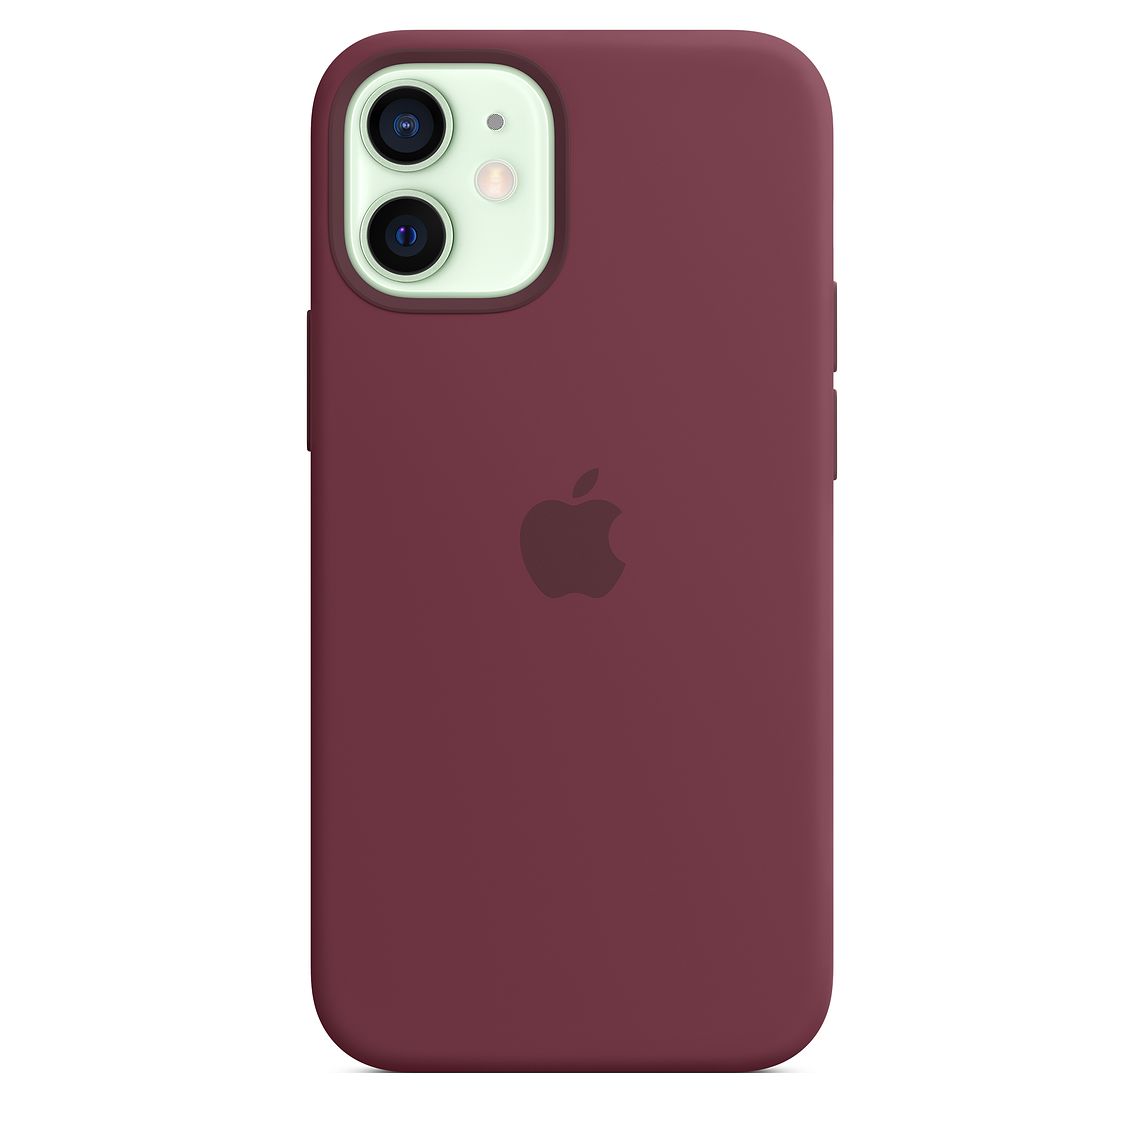 Фото — Чехол для смартфона Apple MagSafe для iPhone 12 mini, силикон, сливовый